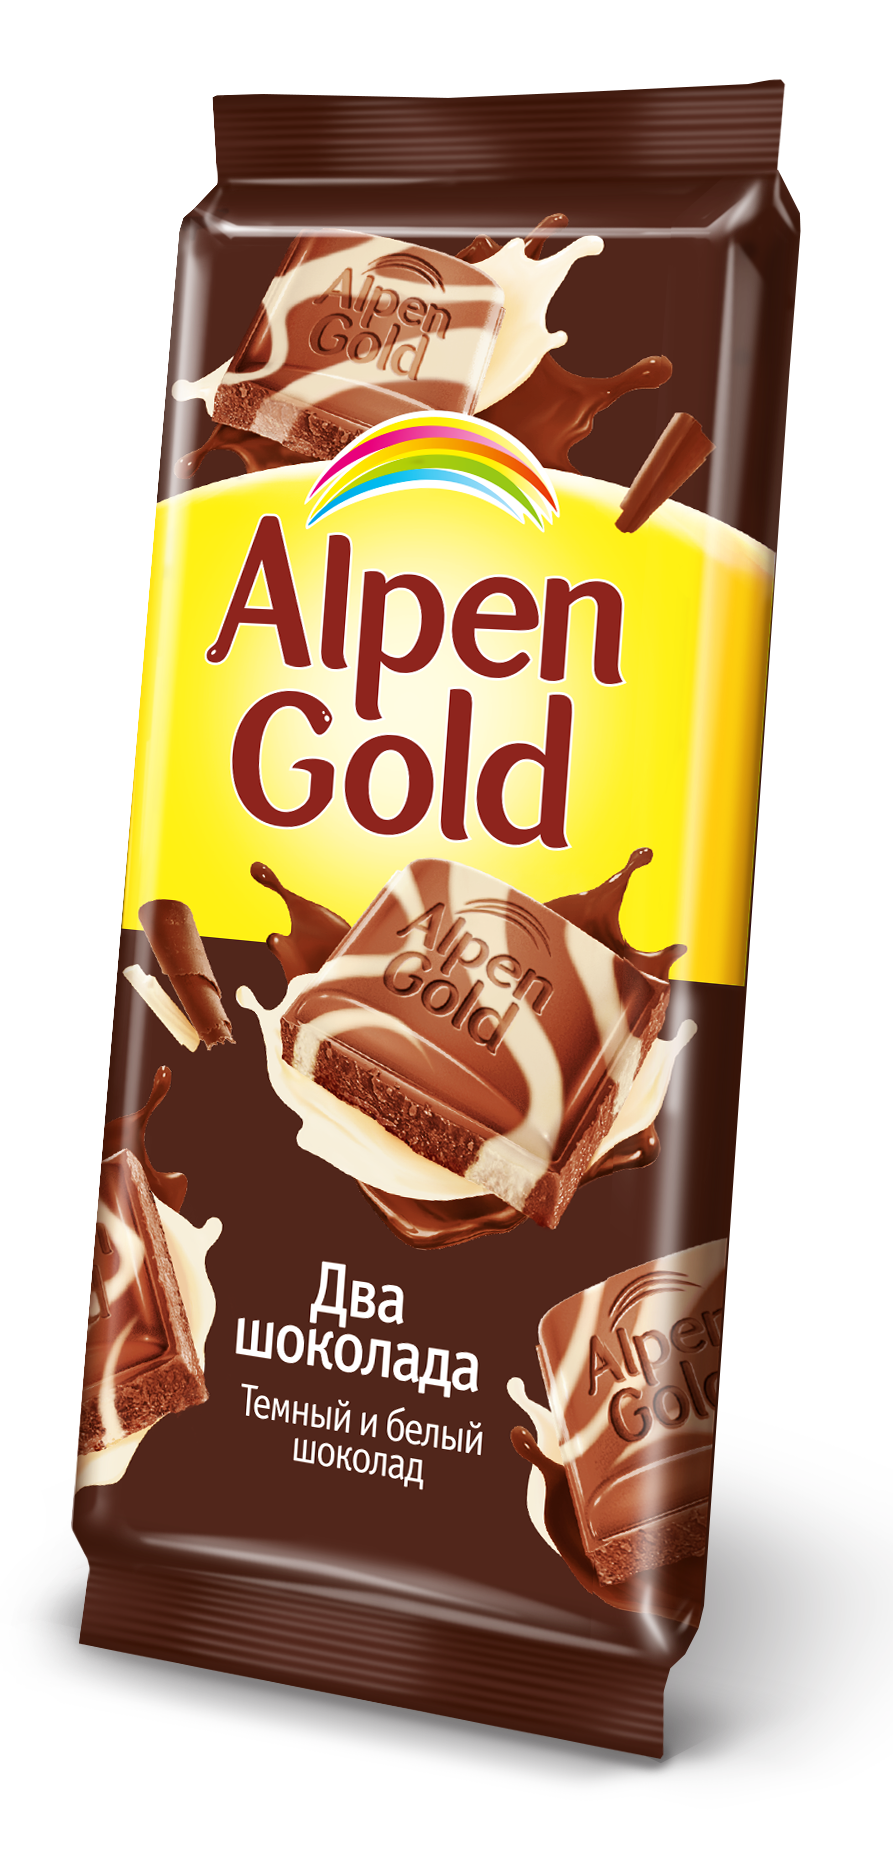 Купить недорогой шоколад. Альпен Гольд 2 шоколада. Альпен Гольд два шоколада. Плитка шоколада Альпен Гольд. Шоколад Альпен Гольд 2 шоколада.